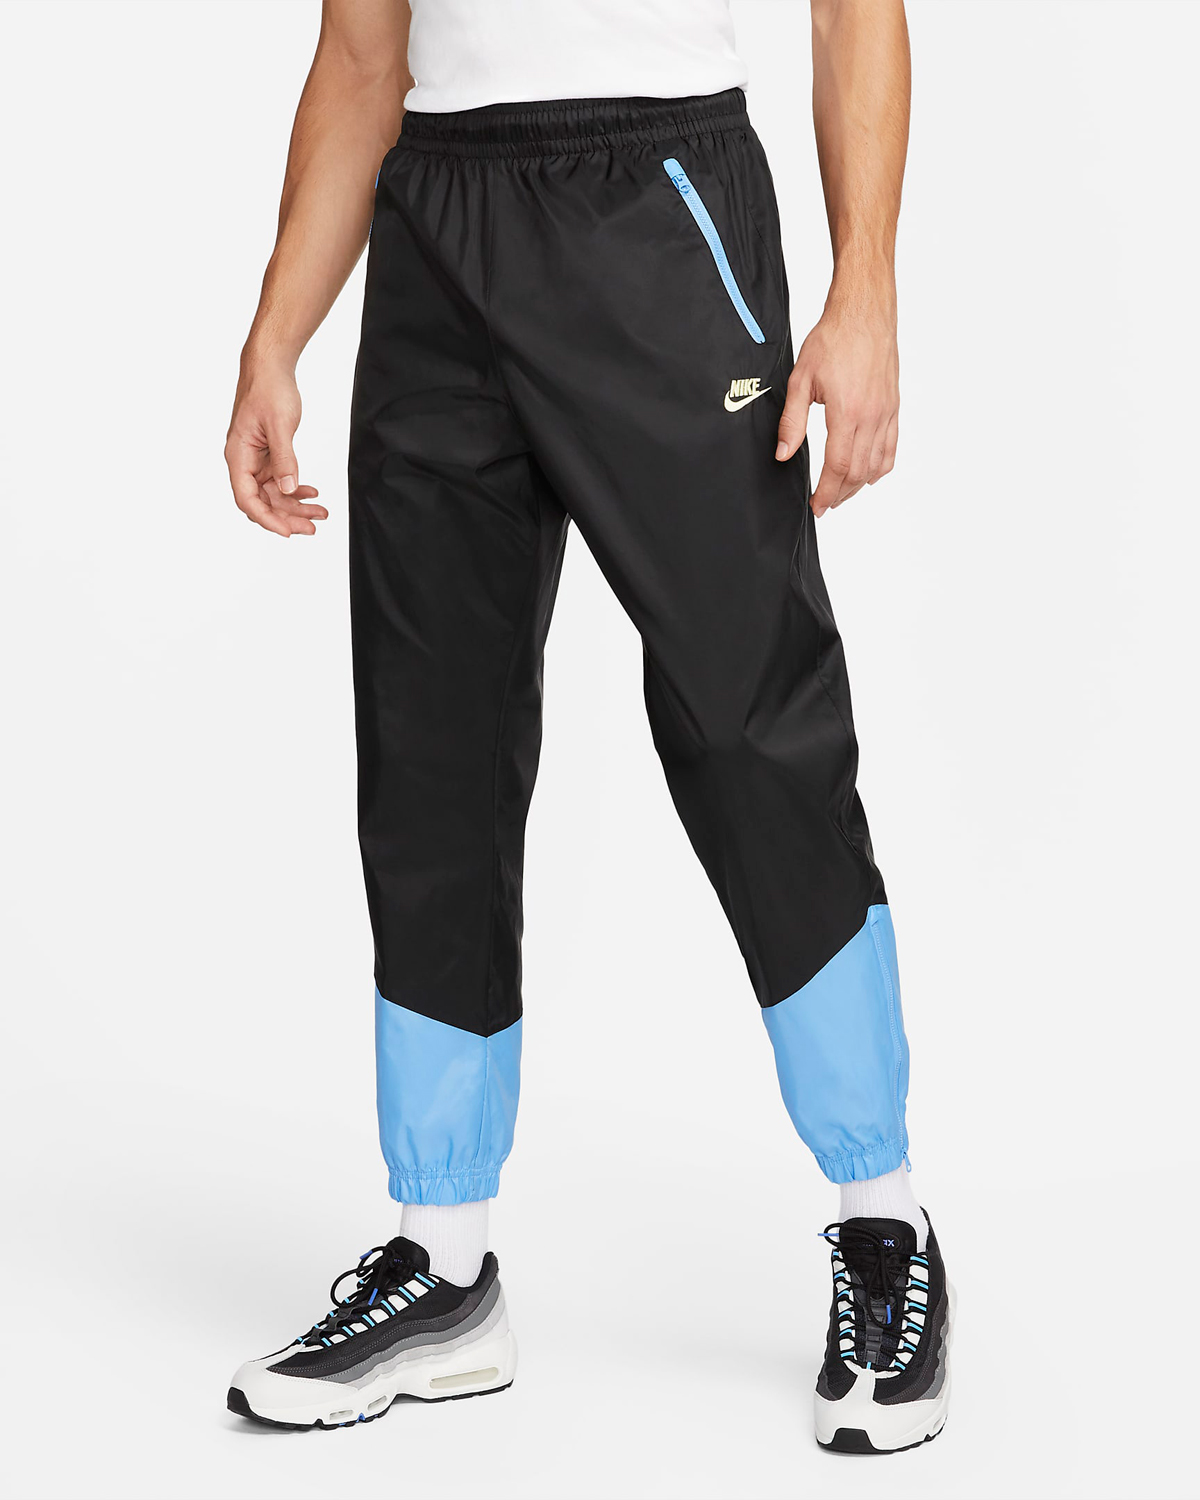 Nike-Windrunner-Pants-Black-University-Blue